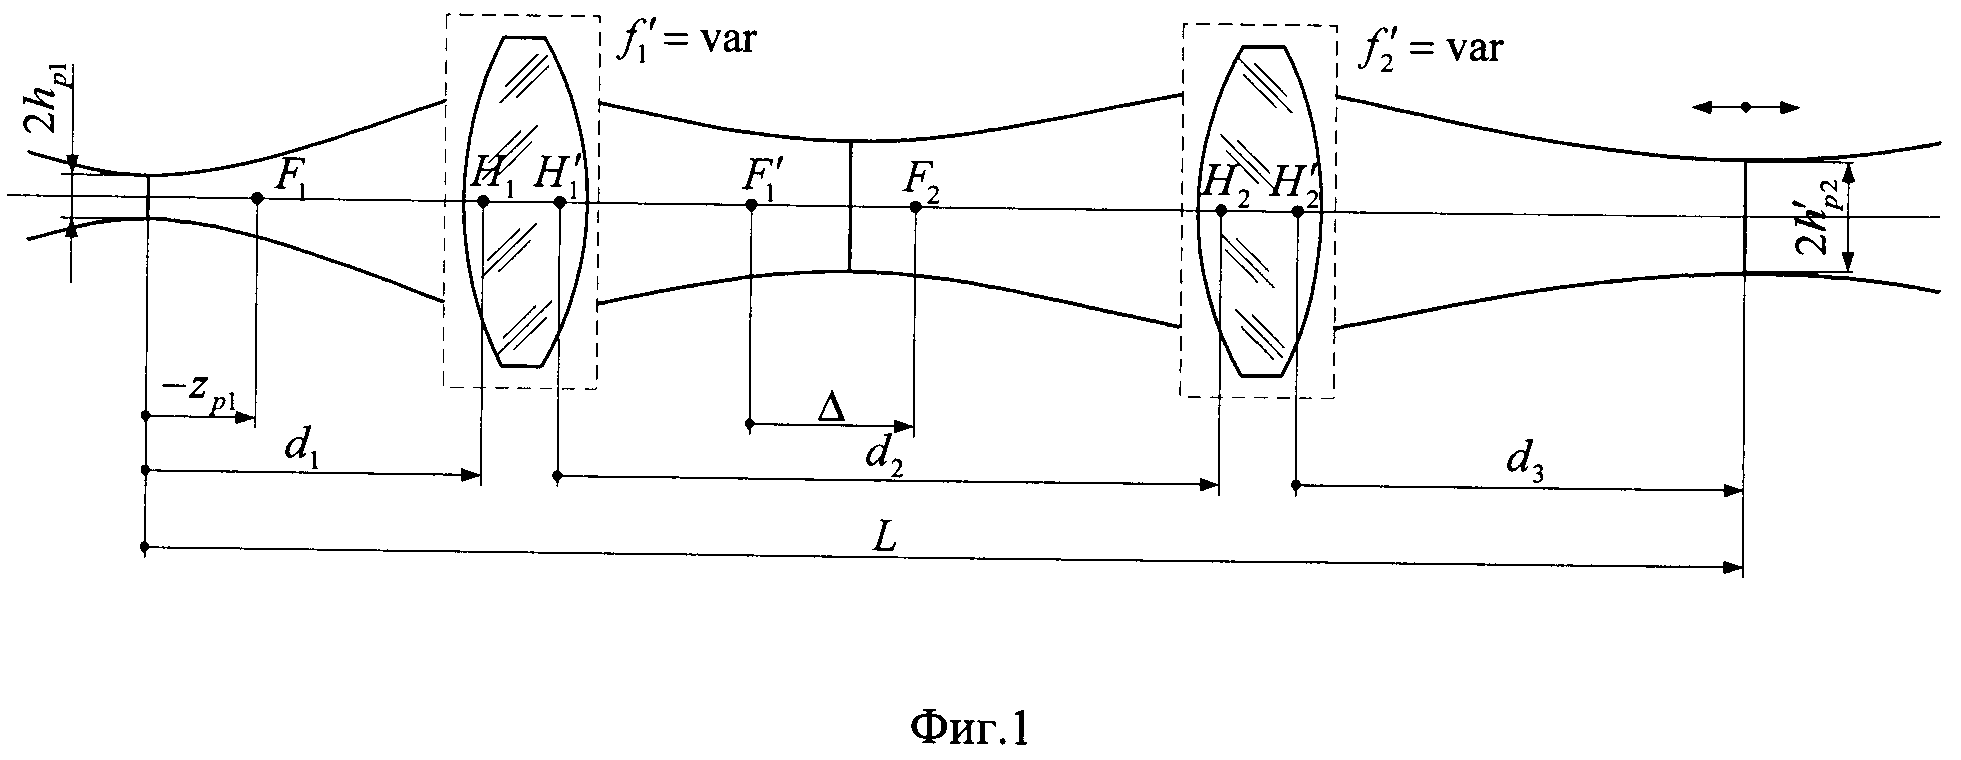 Способ для продольного перемещения перетяжки лазерного гауссова пучка постоянного диаметра без перемещения компонентов оптической системы (варианты)